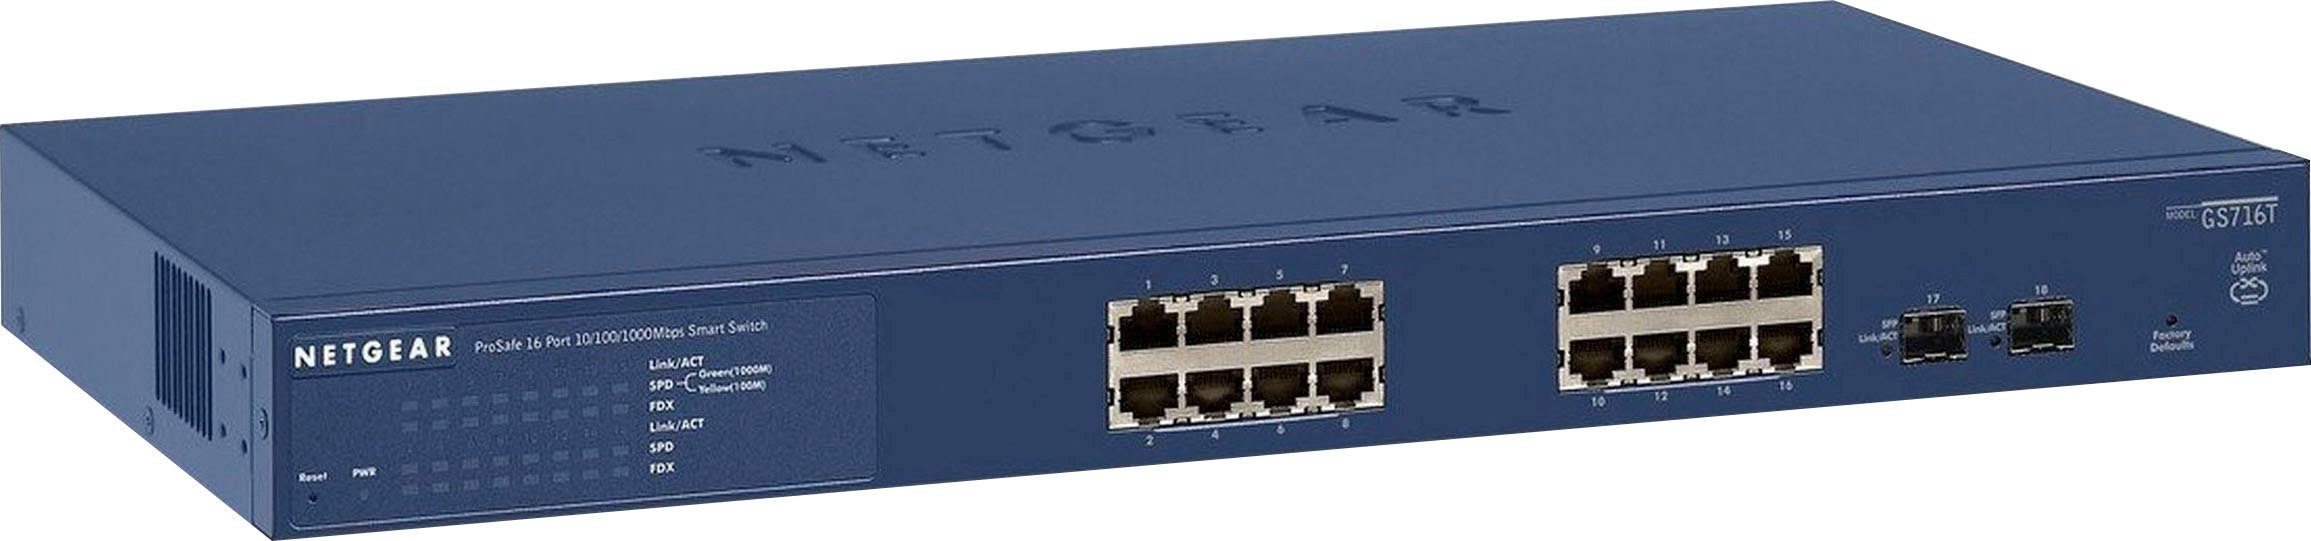 NETGEAR GS716T-300EUS Netzwerk-Switch